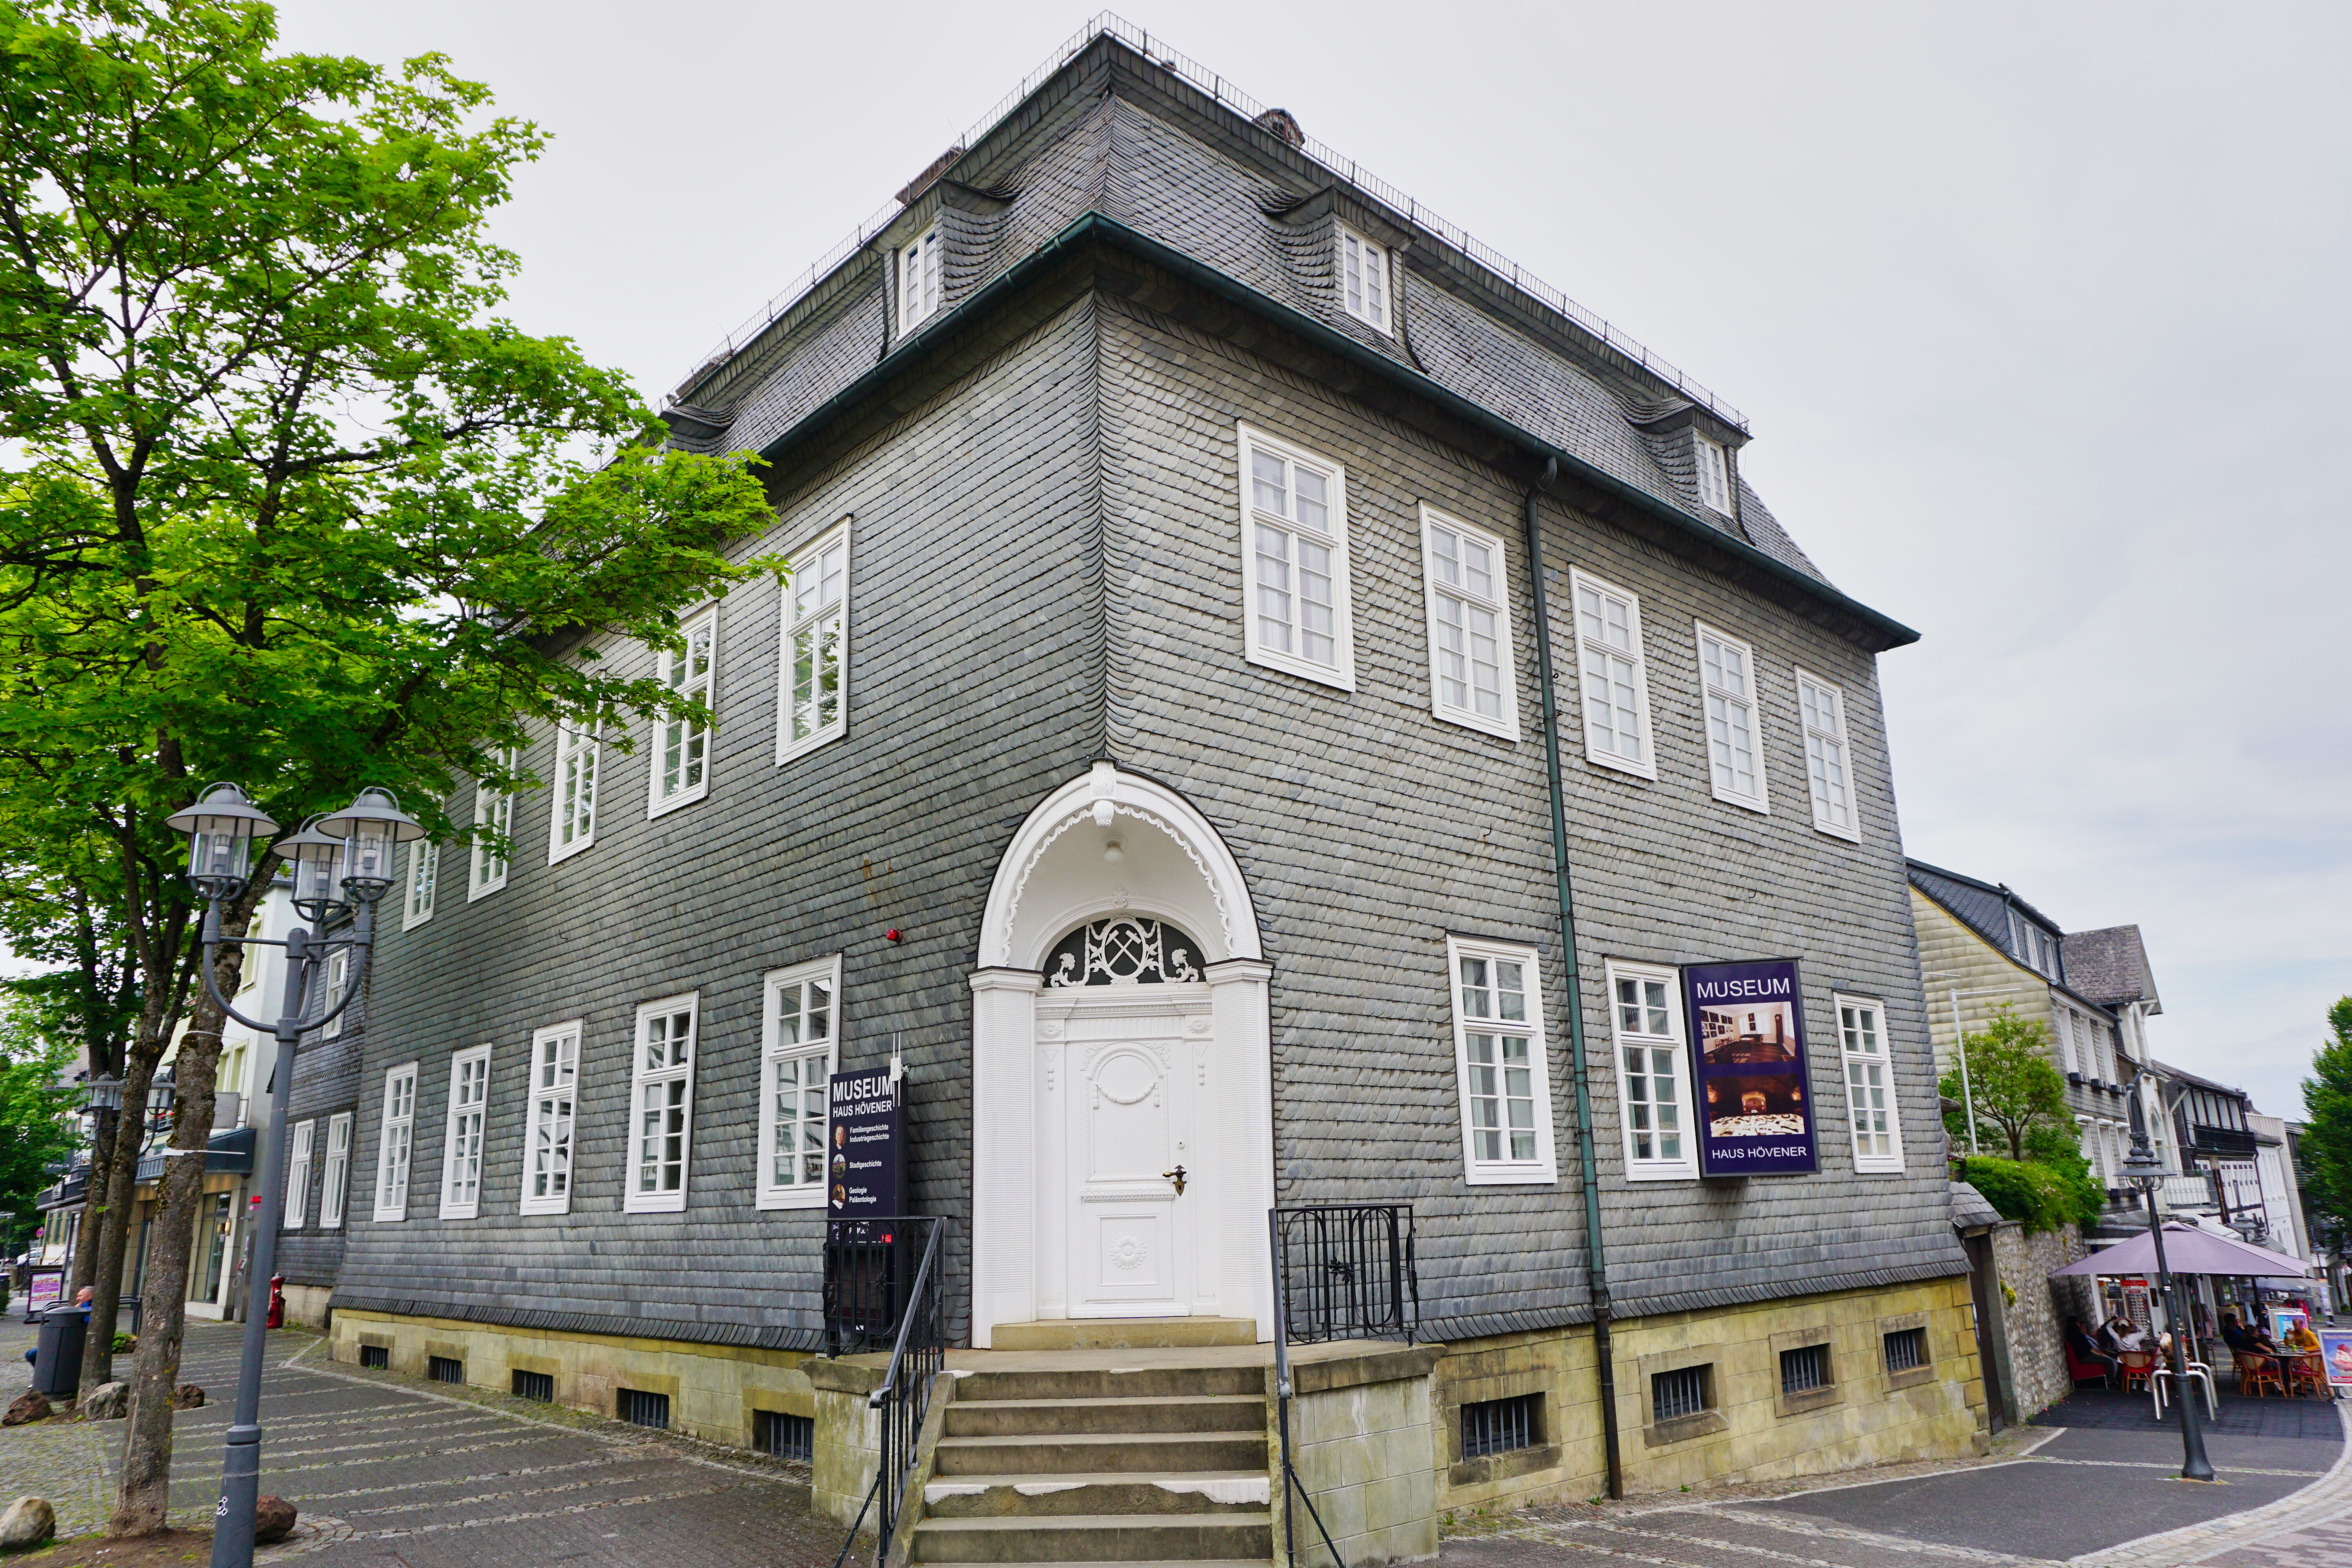 Museum Haus Hövener, Brilon.
